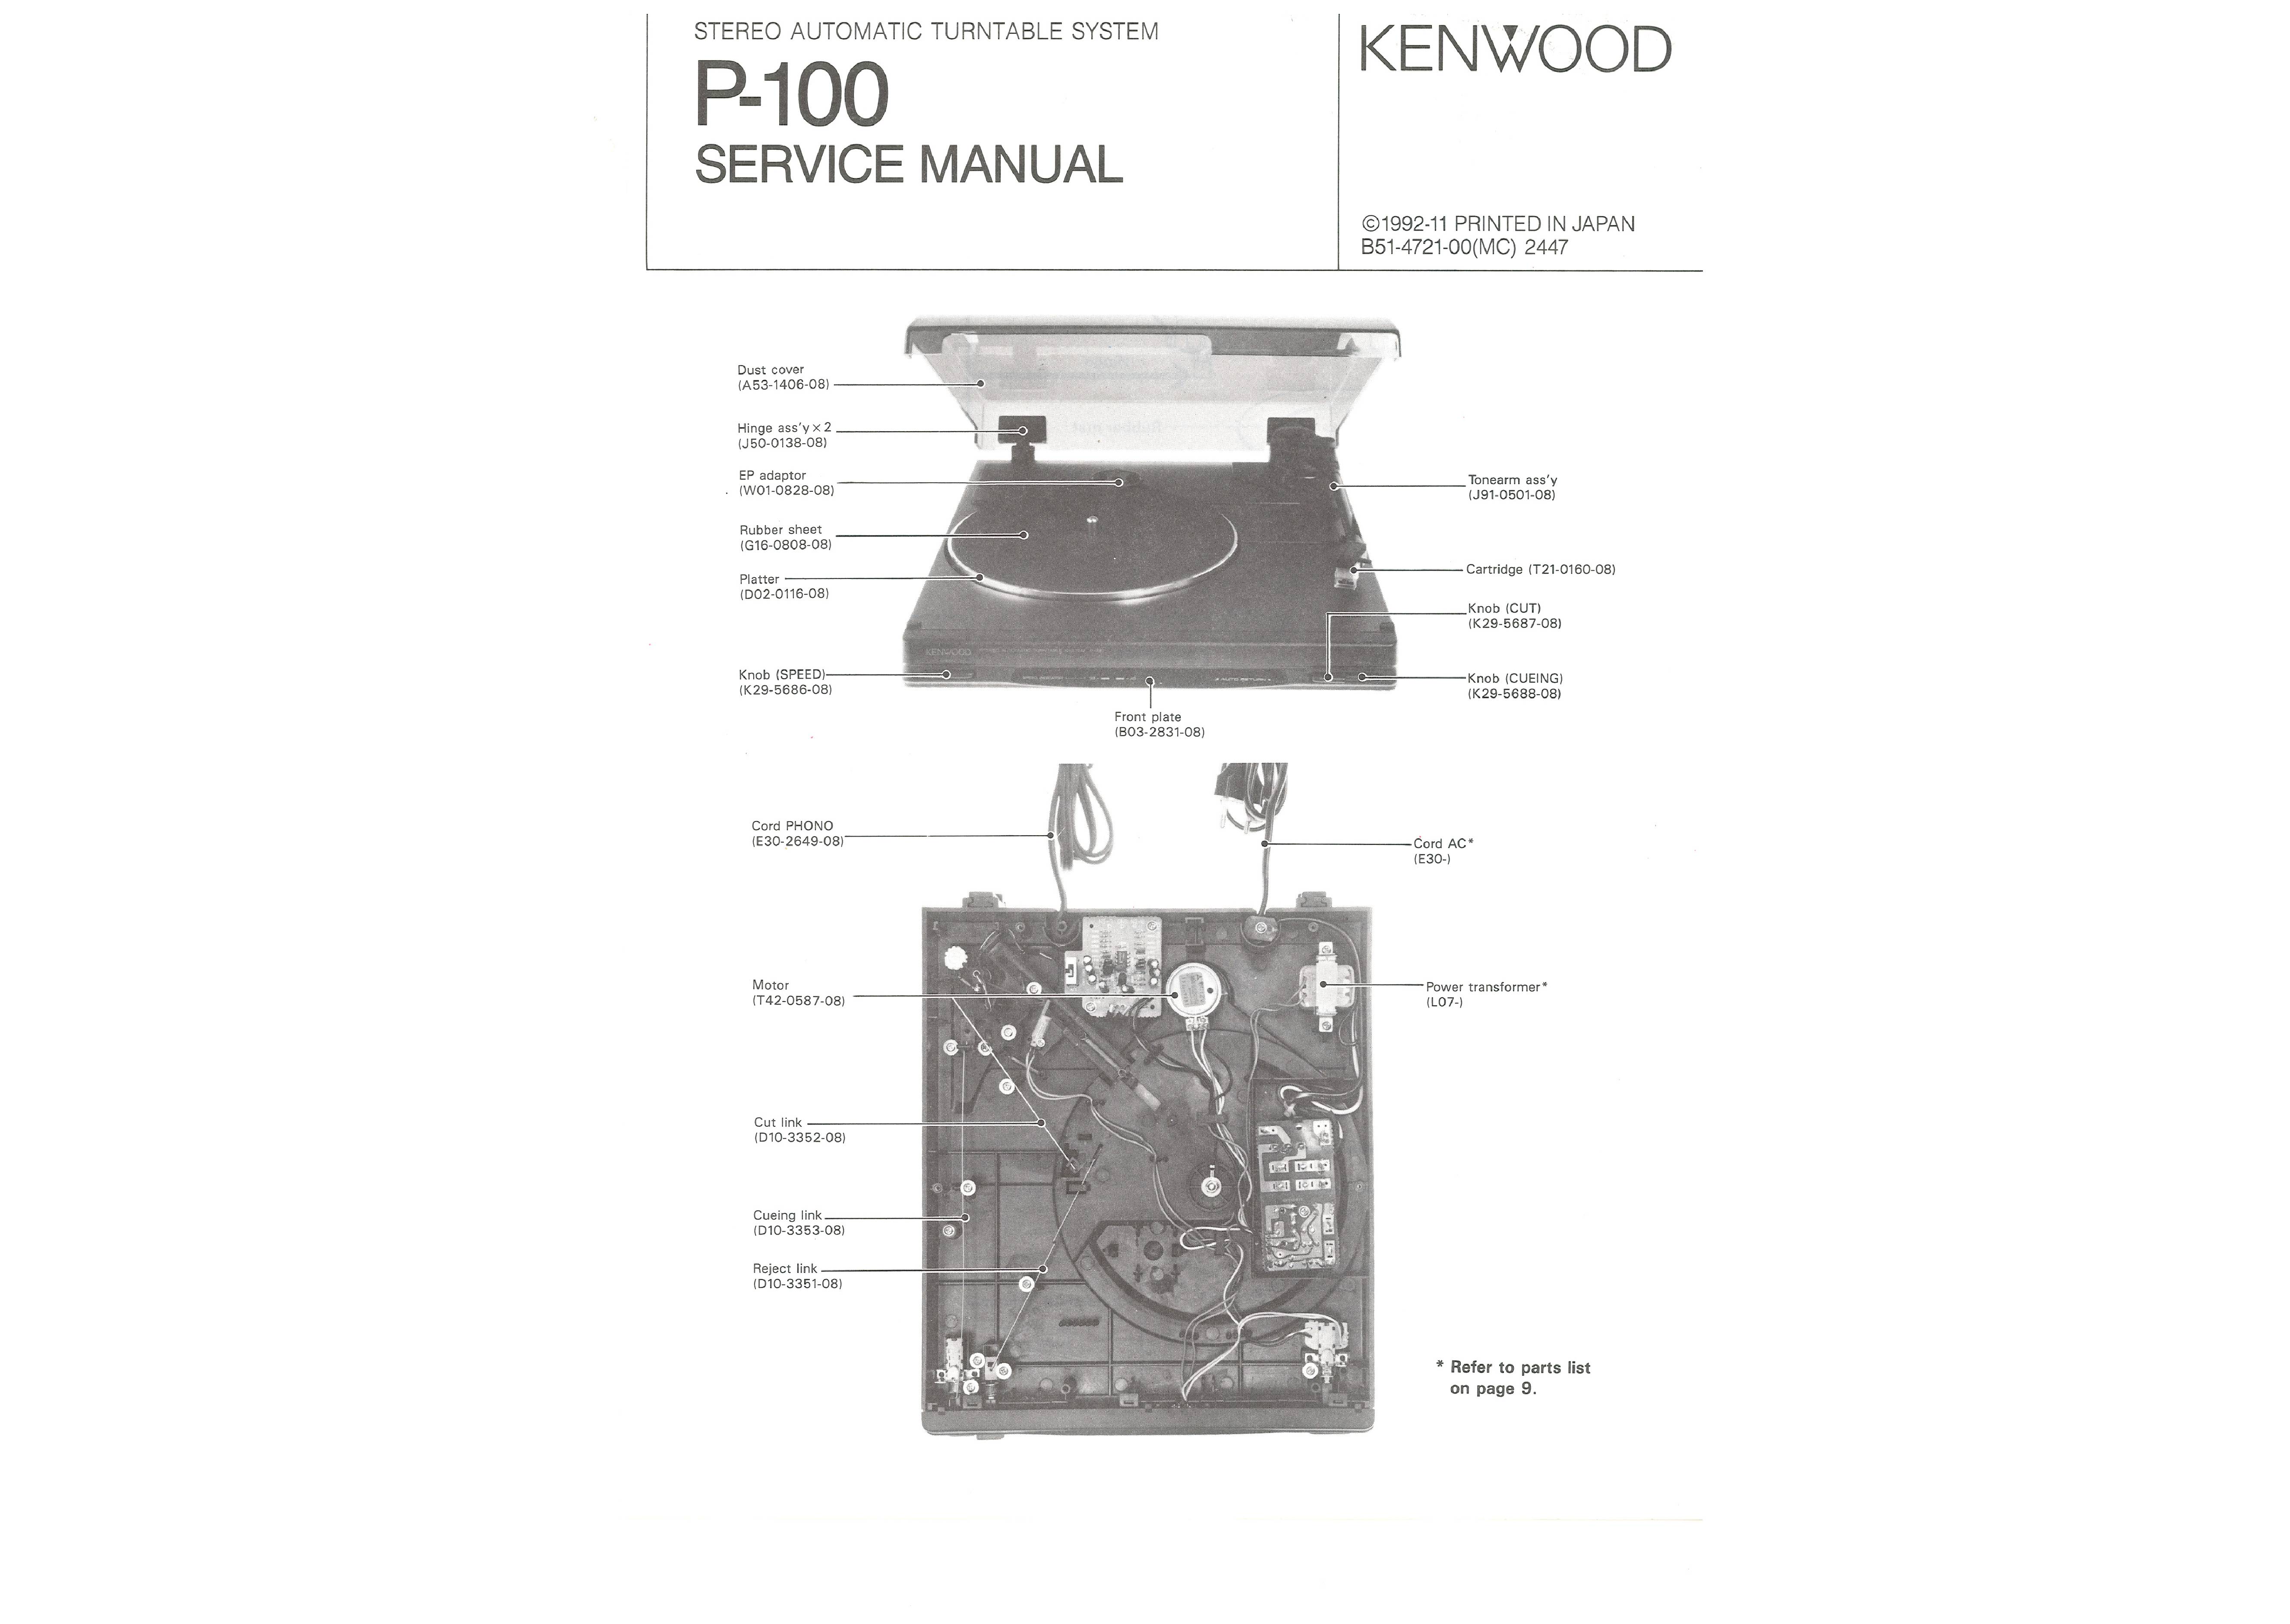 Kenwood P-100